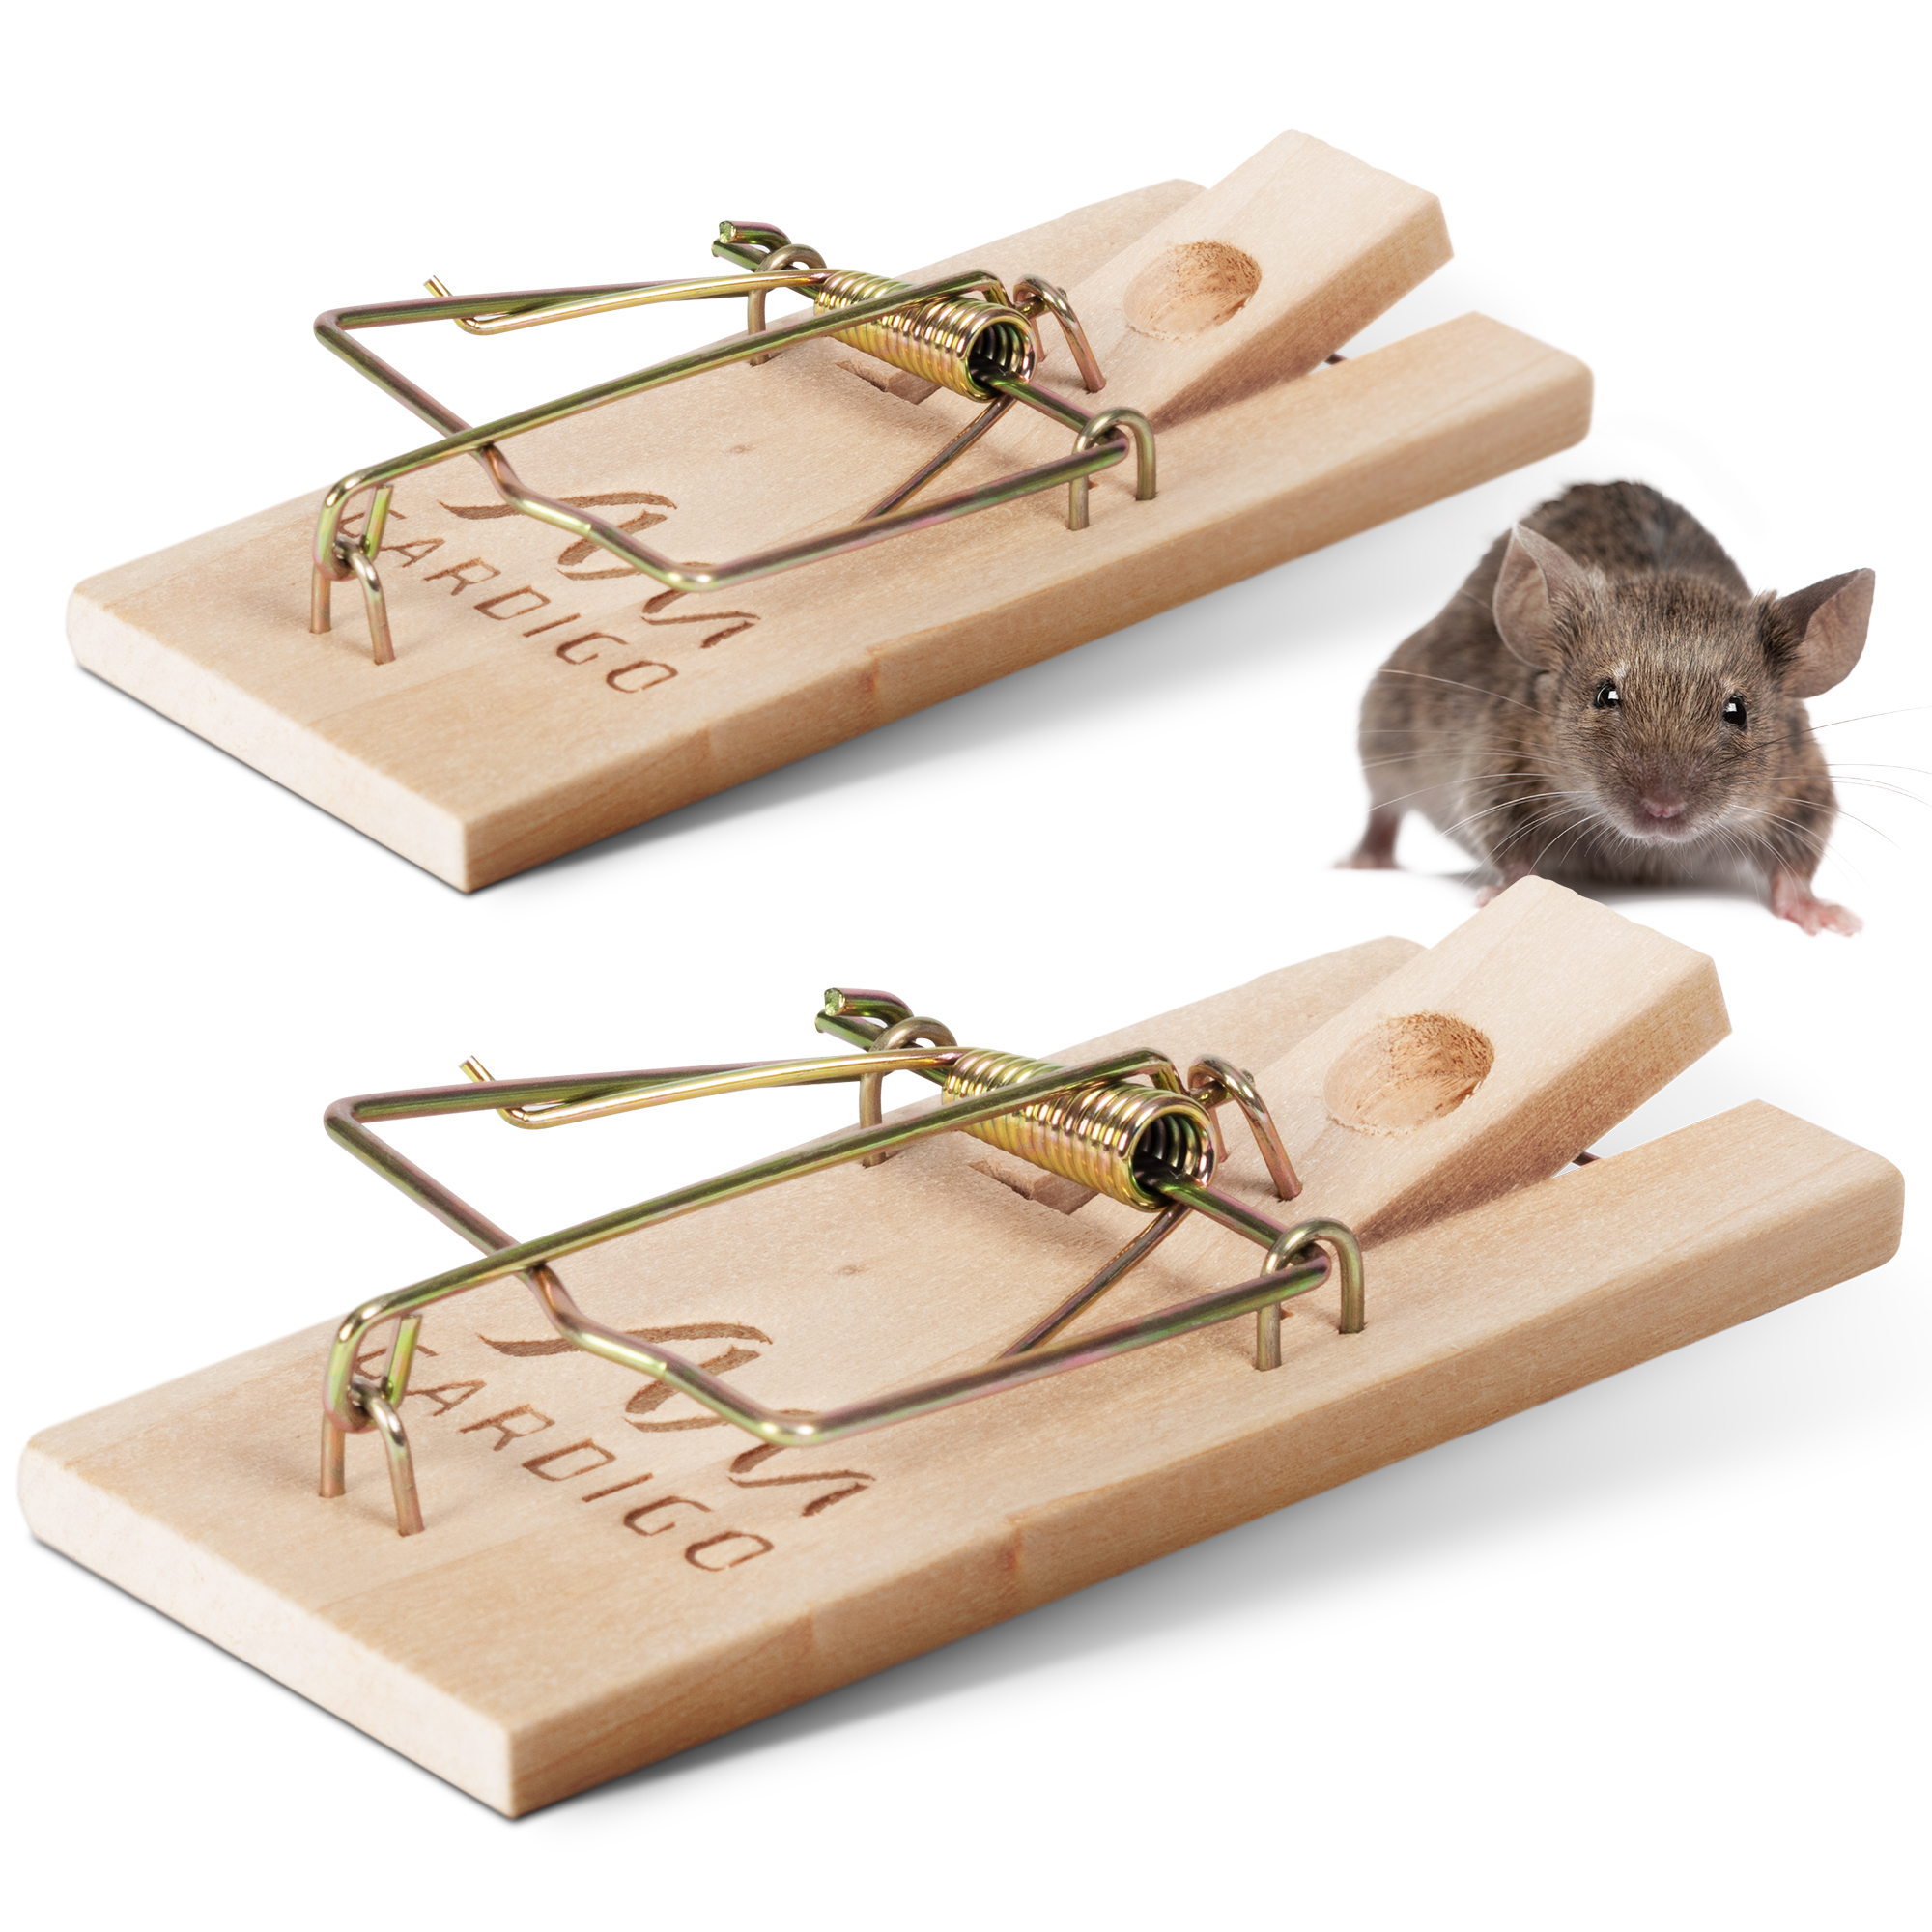 MouseX® Wood Traps